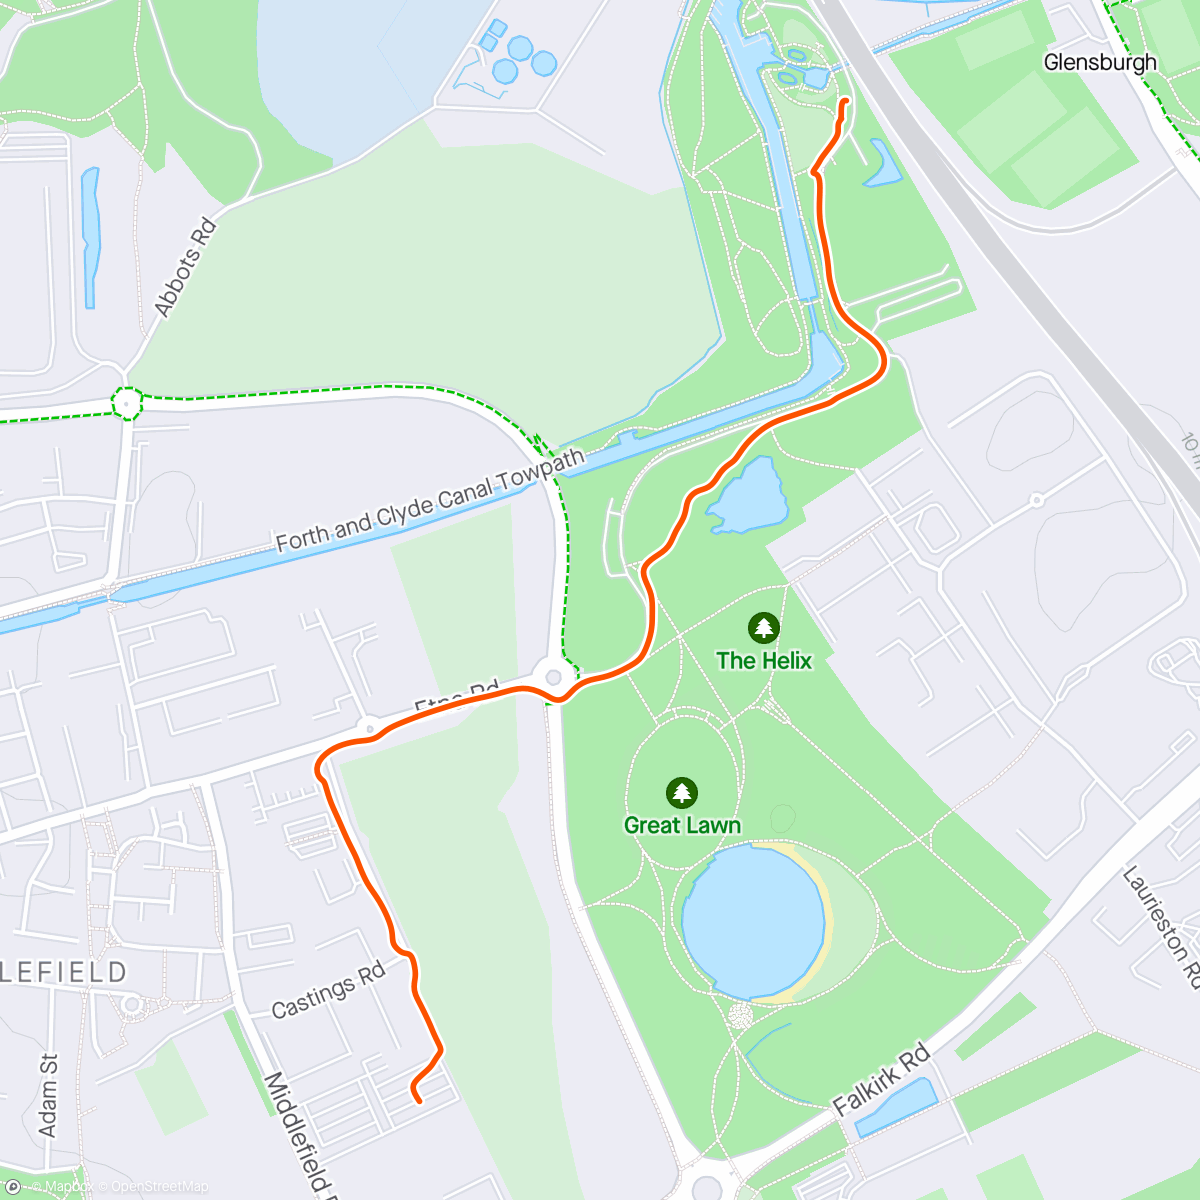 Карта физической активности (Evening Walk)